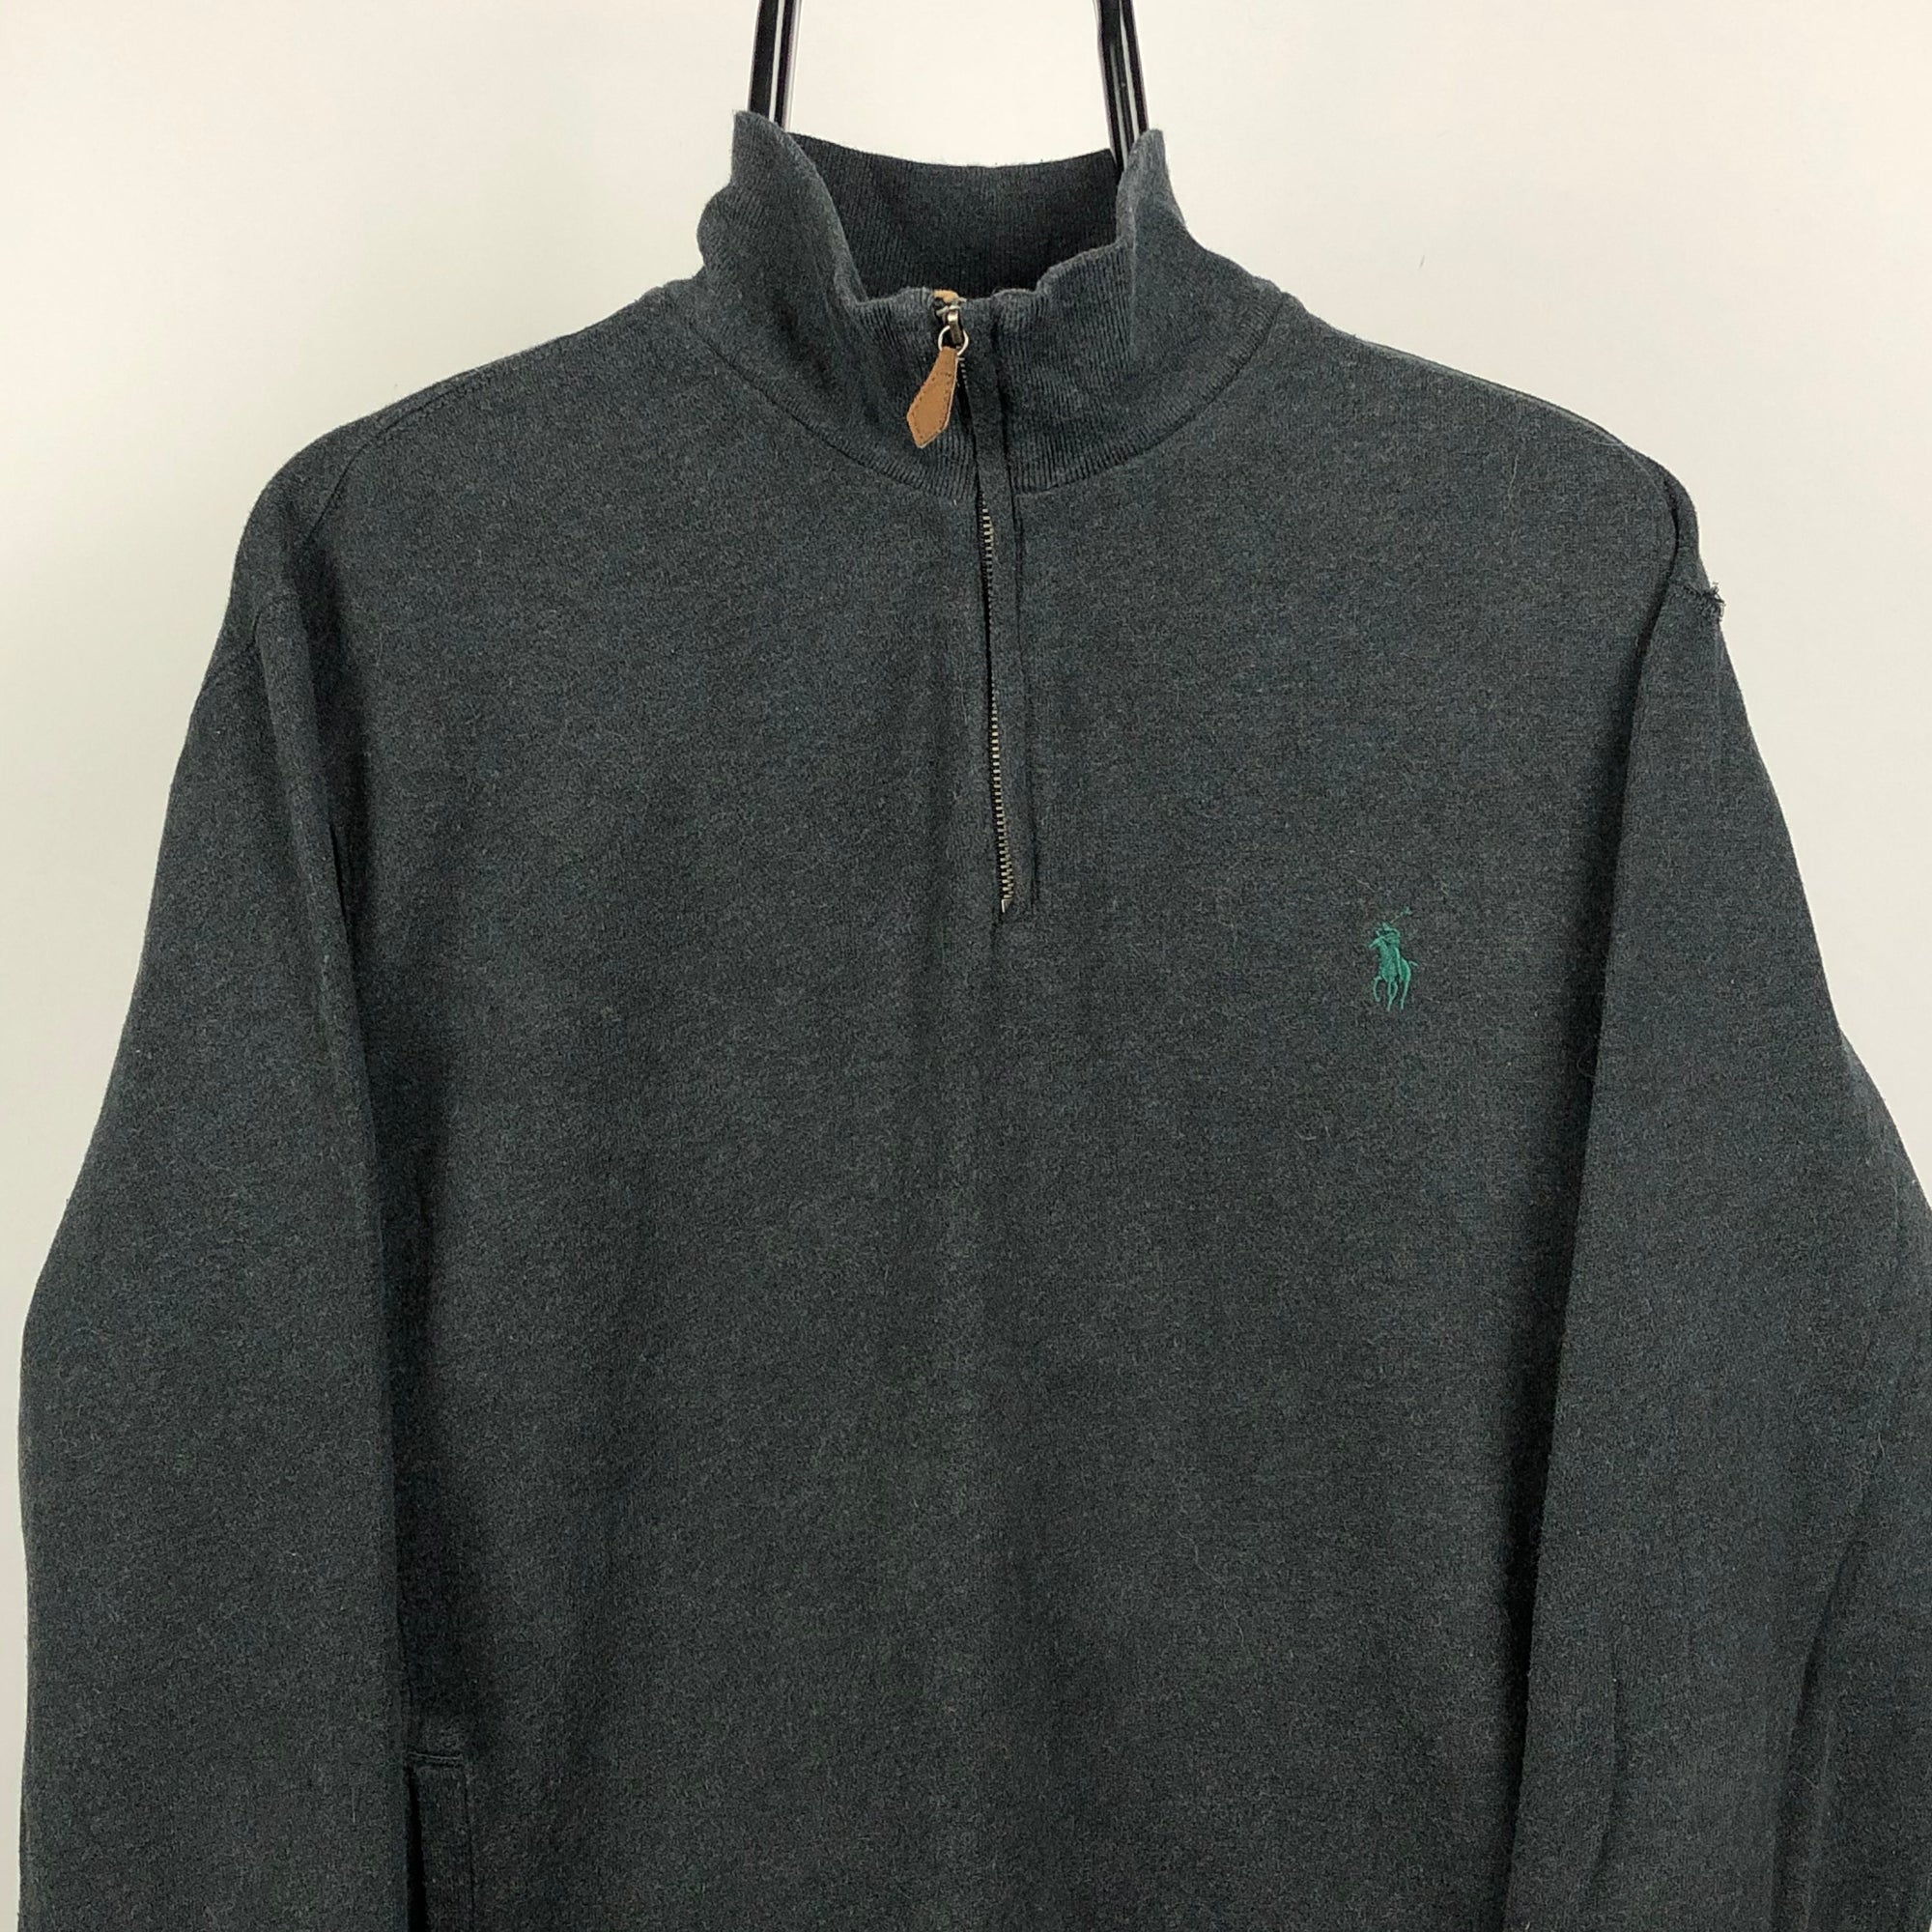 Polo 1/4 Zip Sweatshirt in Charcoal - Men's Medium/Women's Large